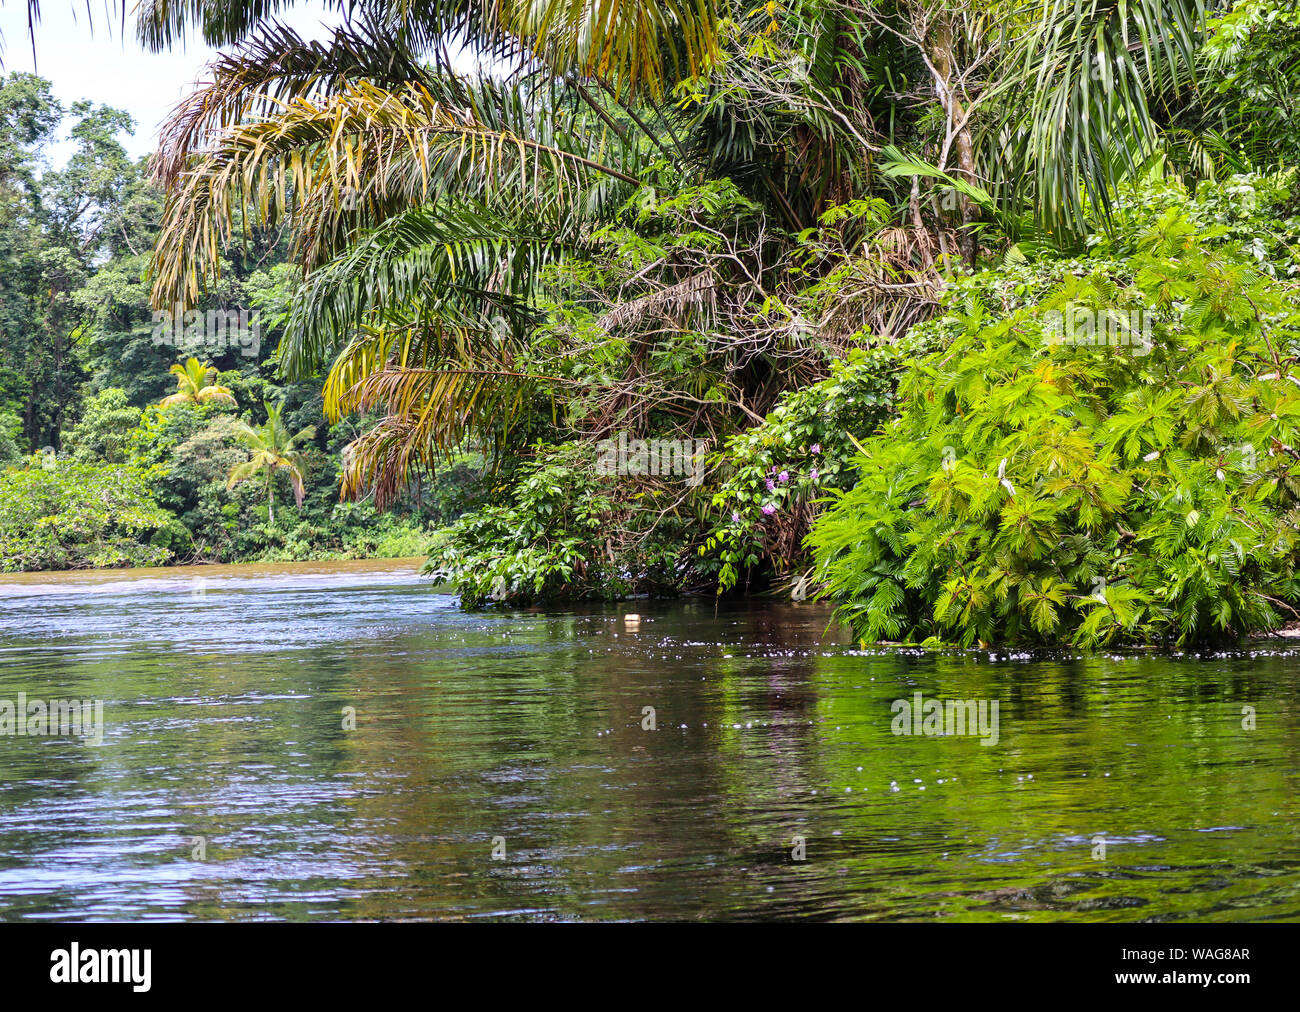 Rain forest, Costa Rica. Stock Photo